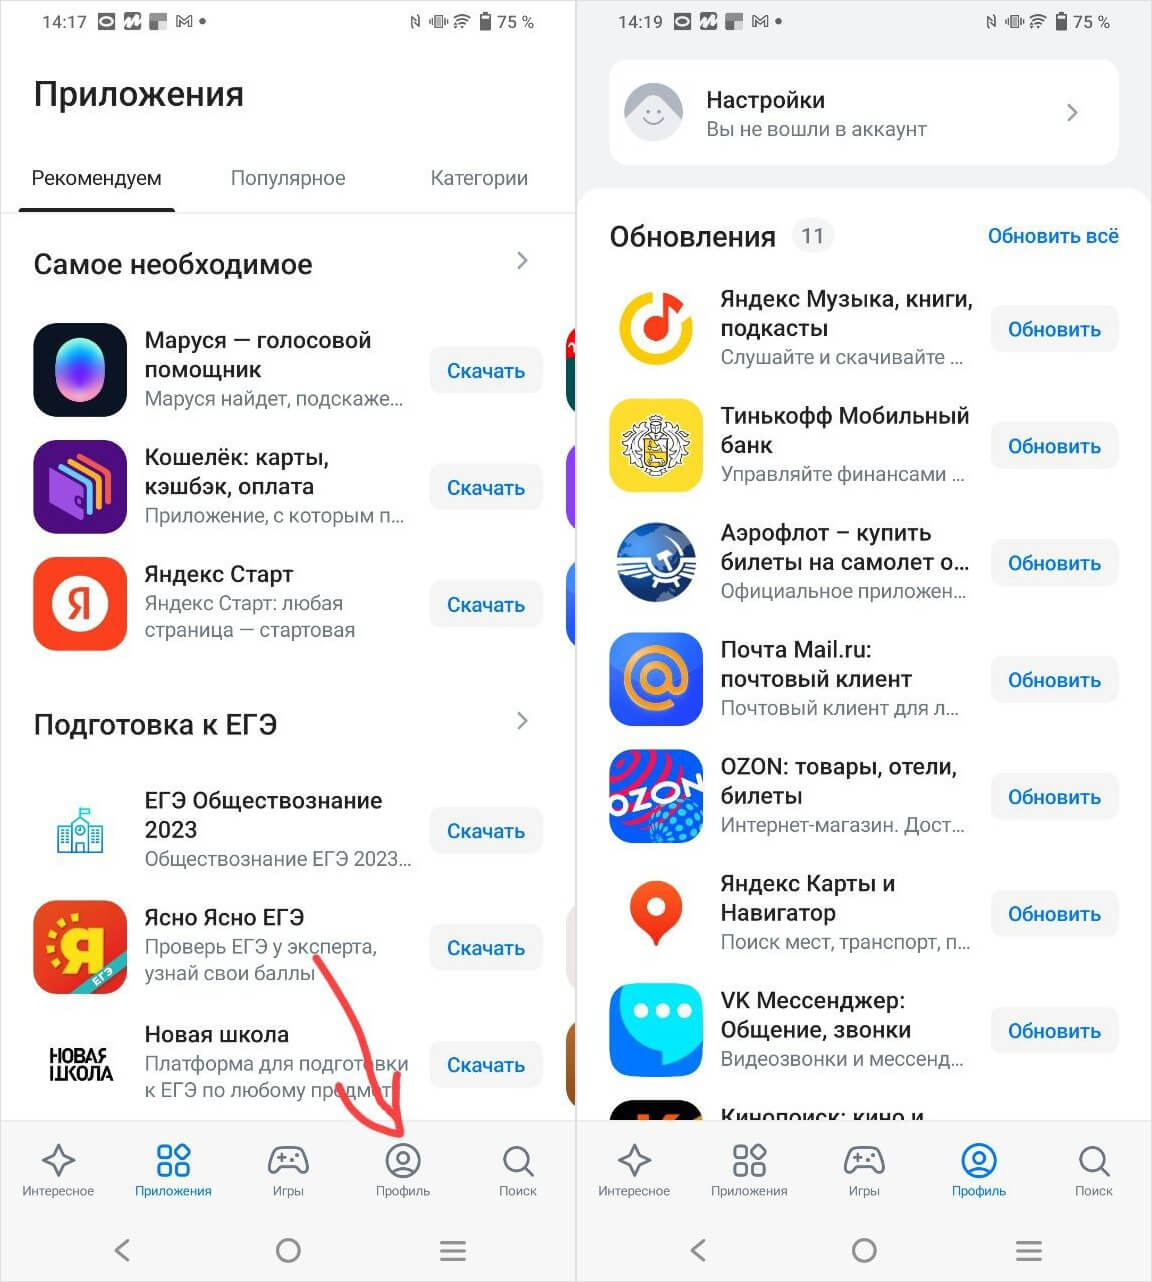 Телеграмм обновить на андроид до последней версии бесплатно русском языке как фото 52